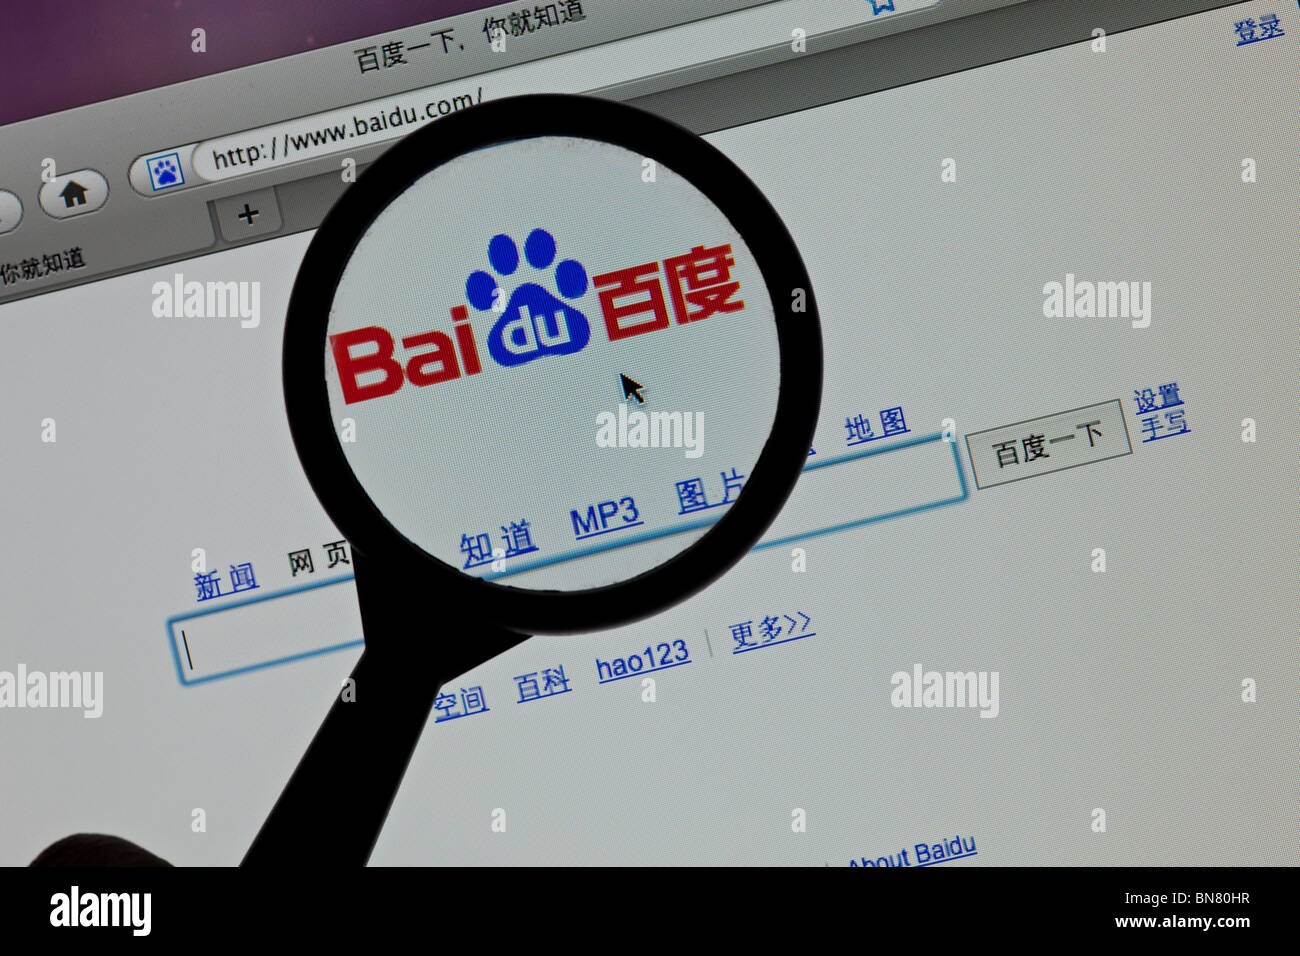 Le moteur de recherche Baidu site web avec loupe Banque D'Images